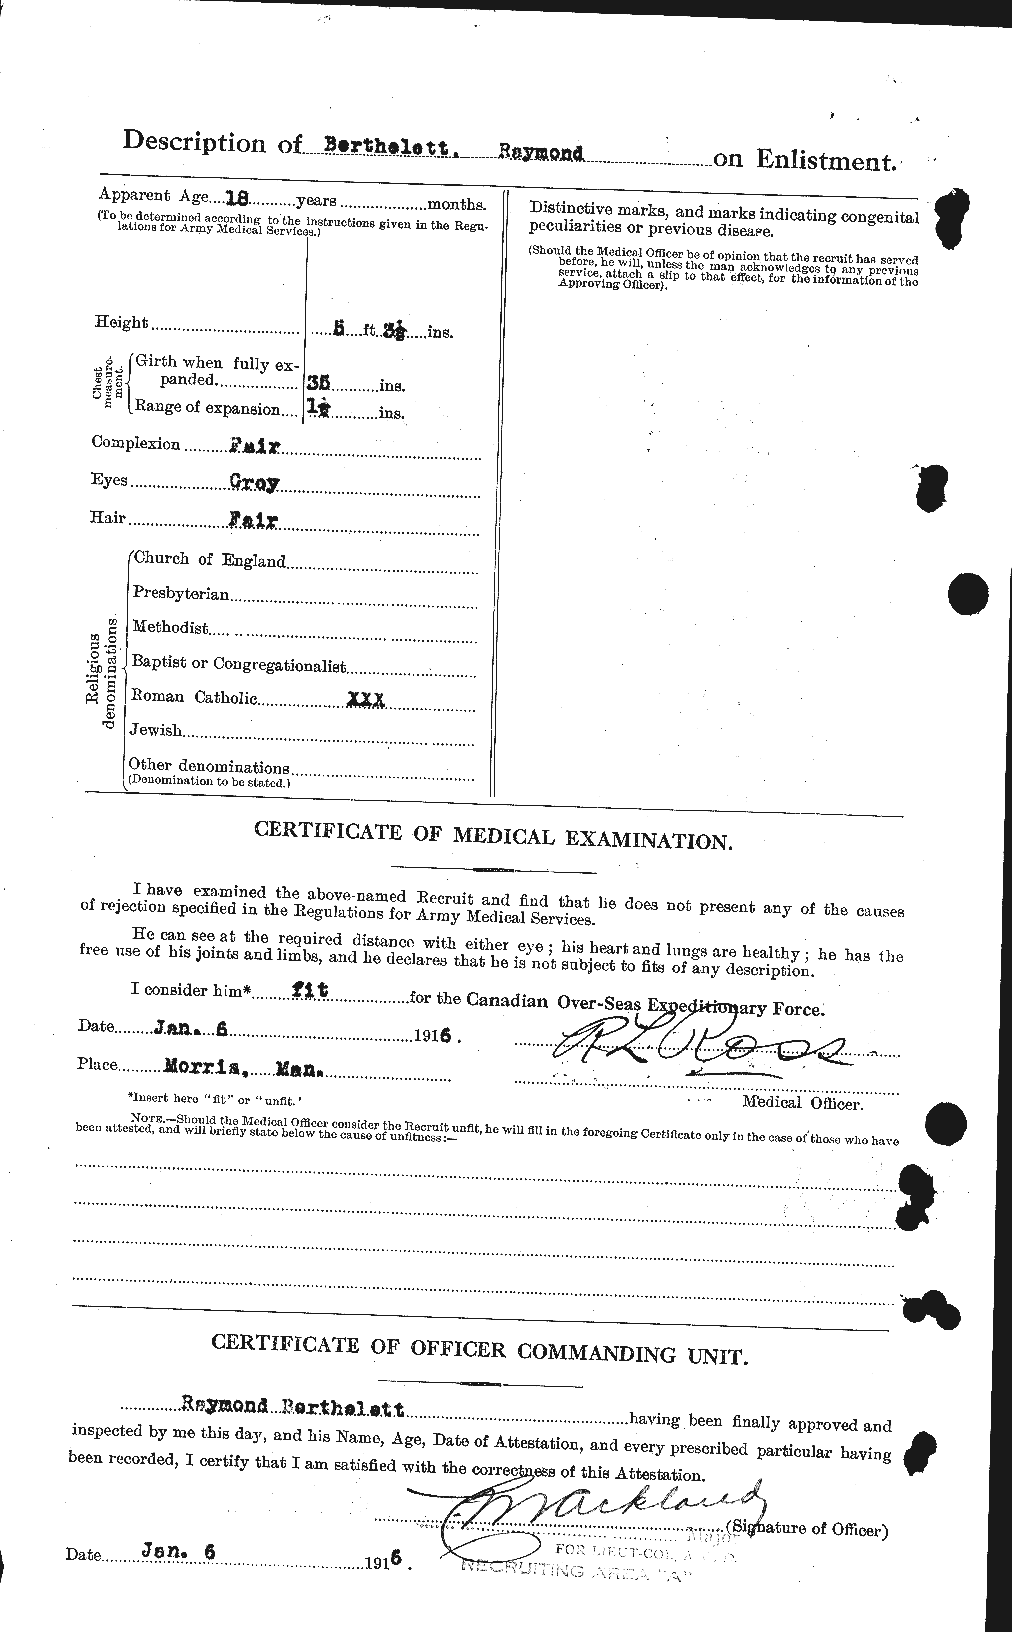 Dossiers du Personnel de la Première Guerre mondiale - CEC 235580b